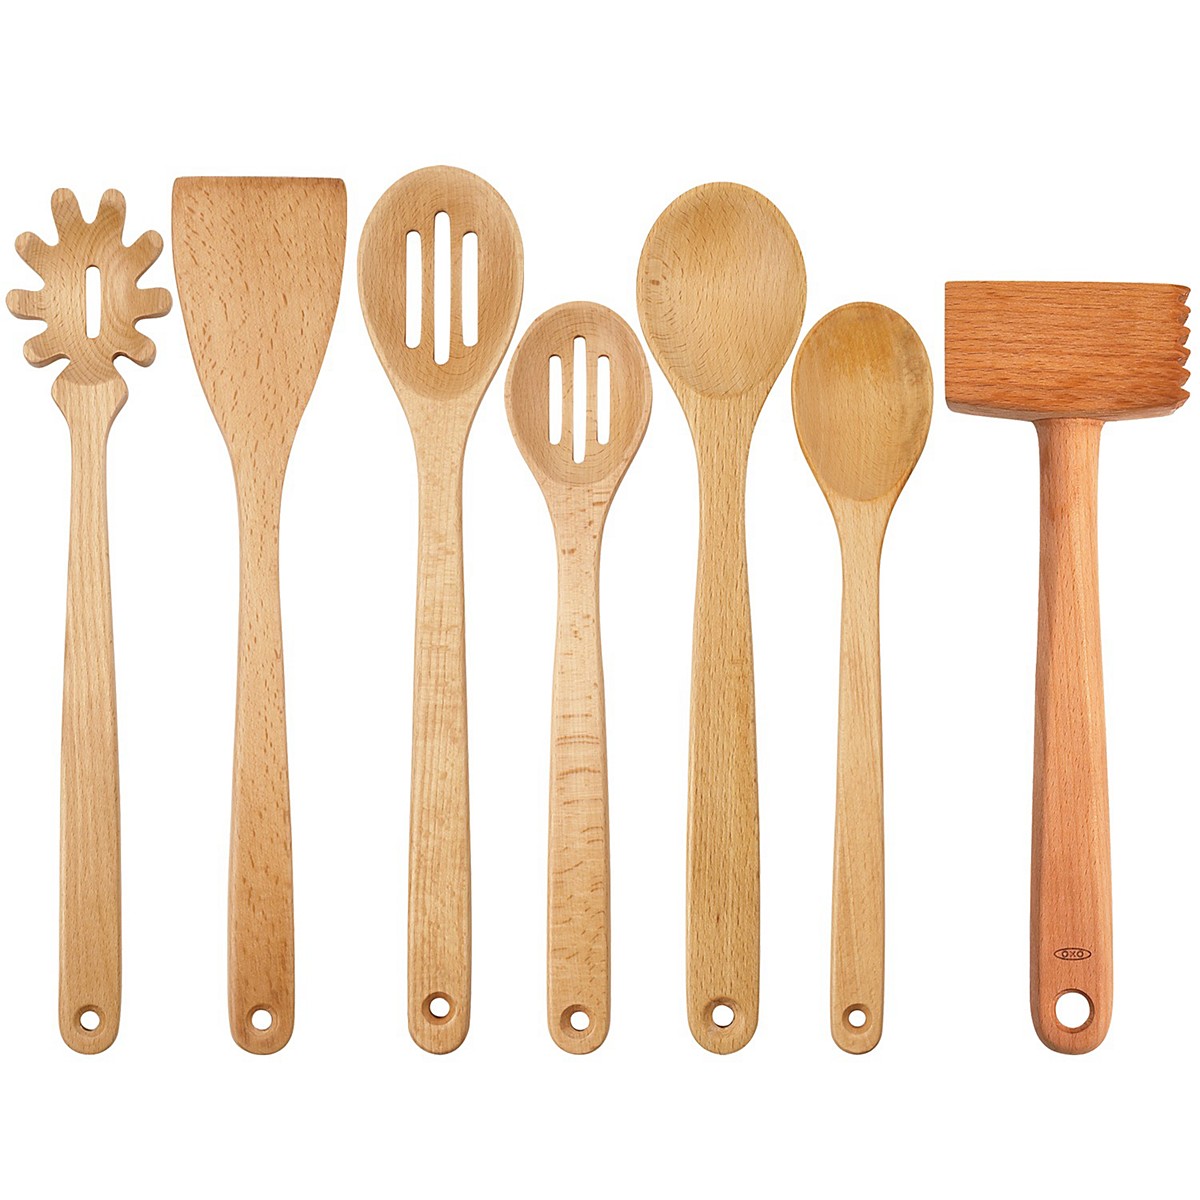 Wooden spoon. Вуден Спун. Изделия из дерева для кухни. Кухонная утварь ложка деревянная. Деревянные кухонные инструменты.